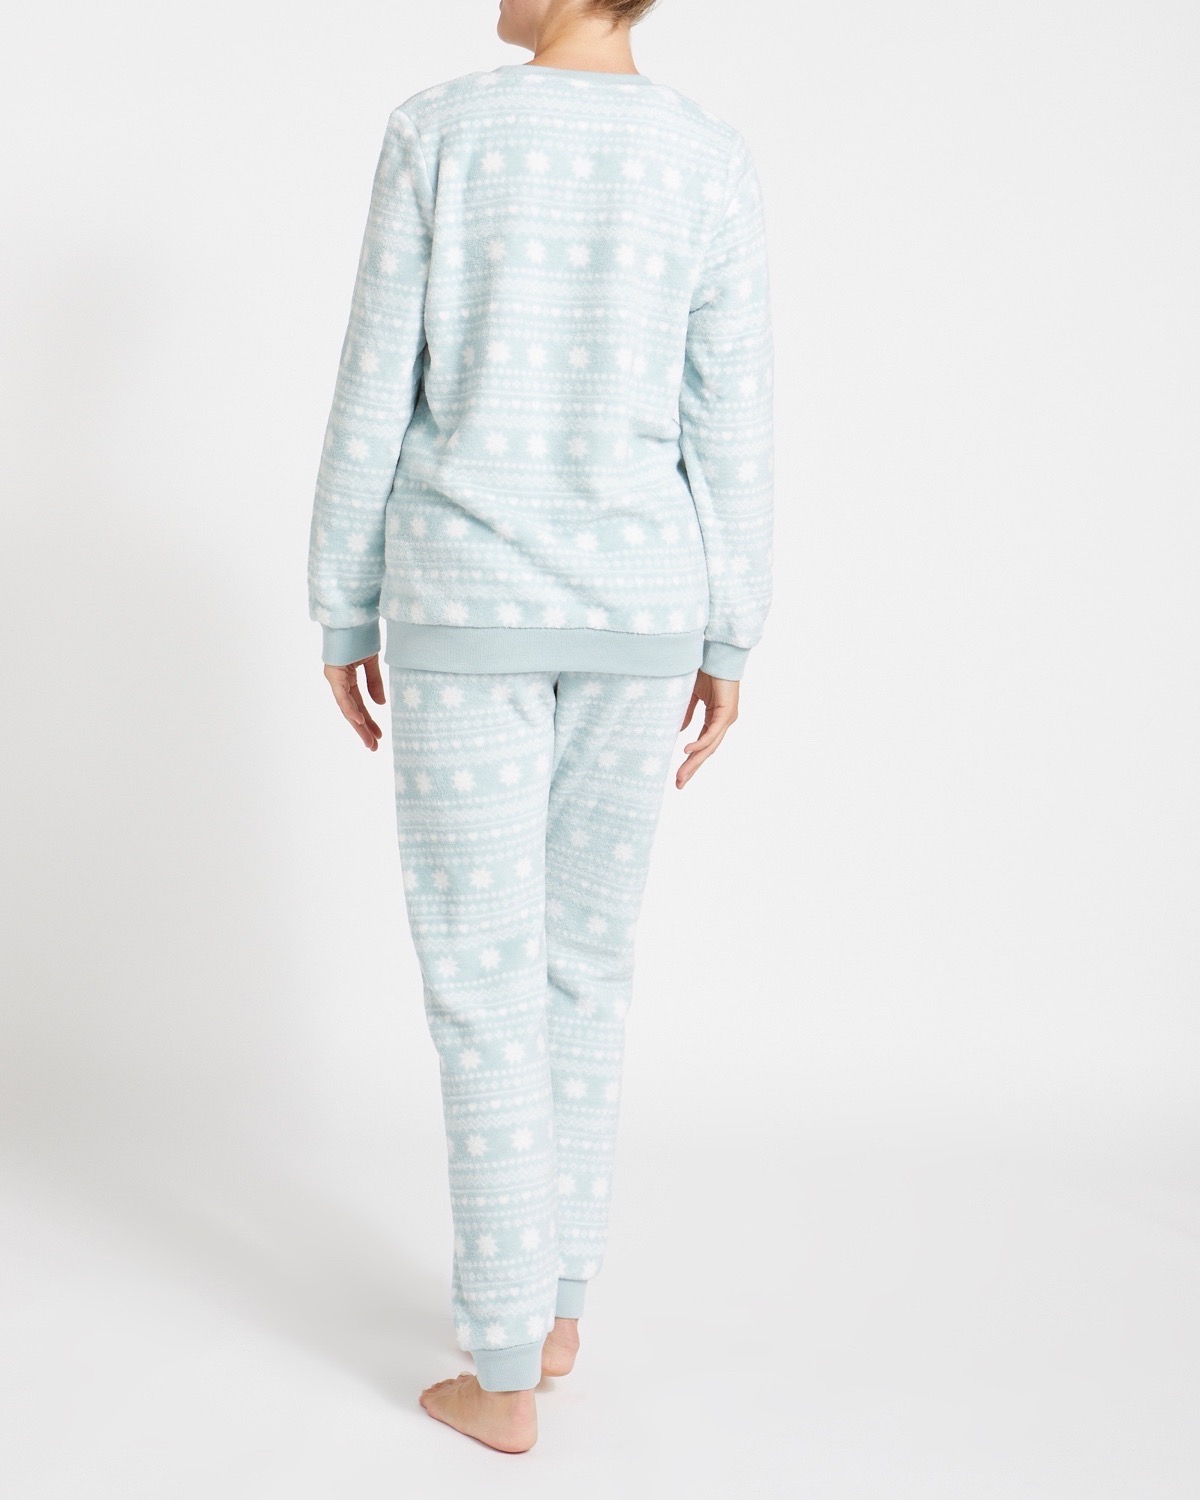 Fluffy Fleece Pyjamas Set